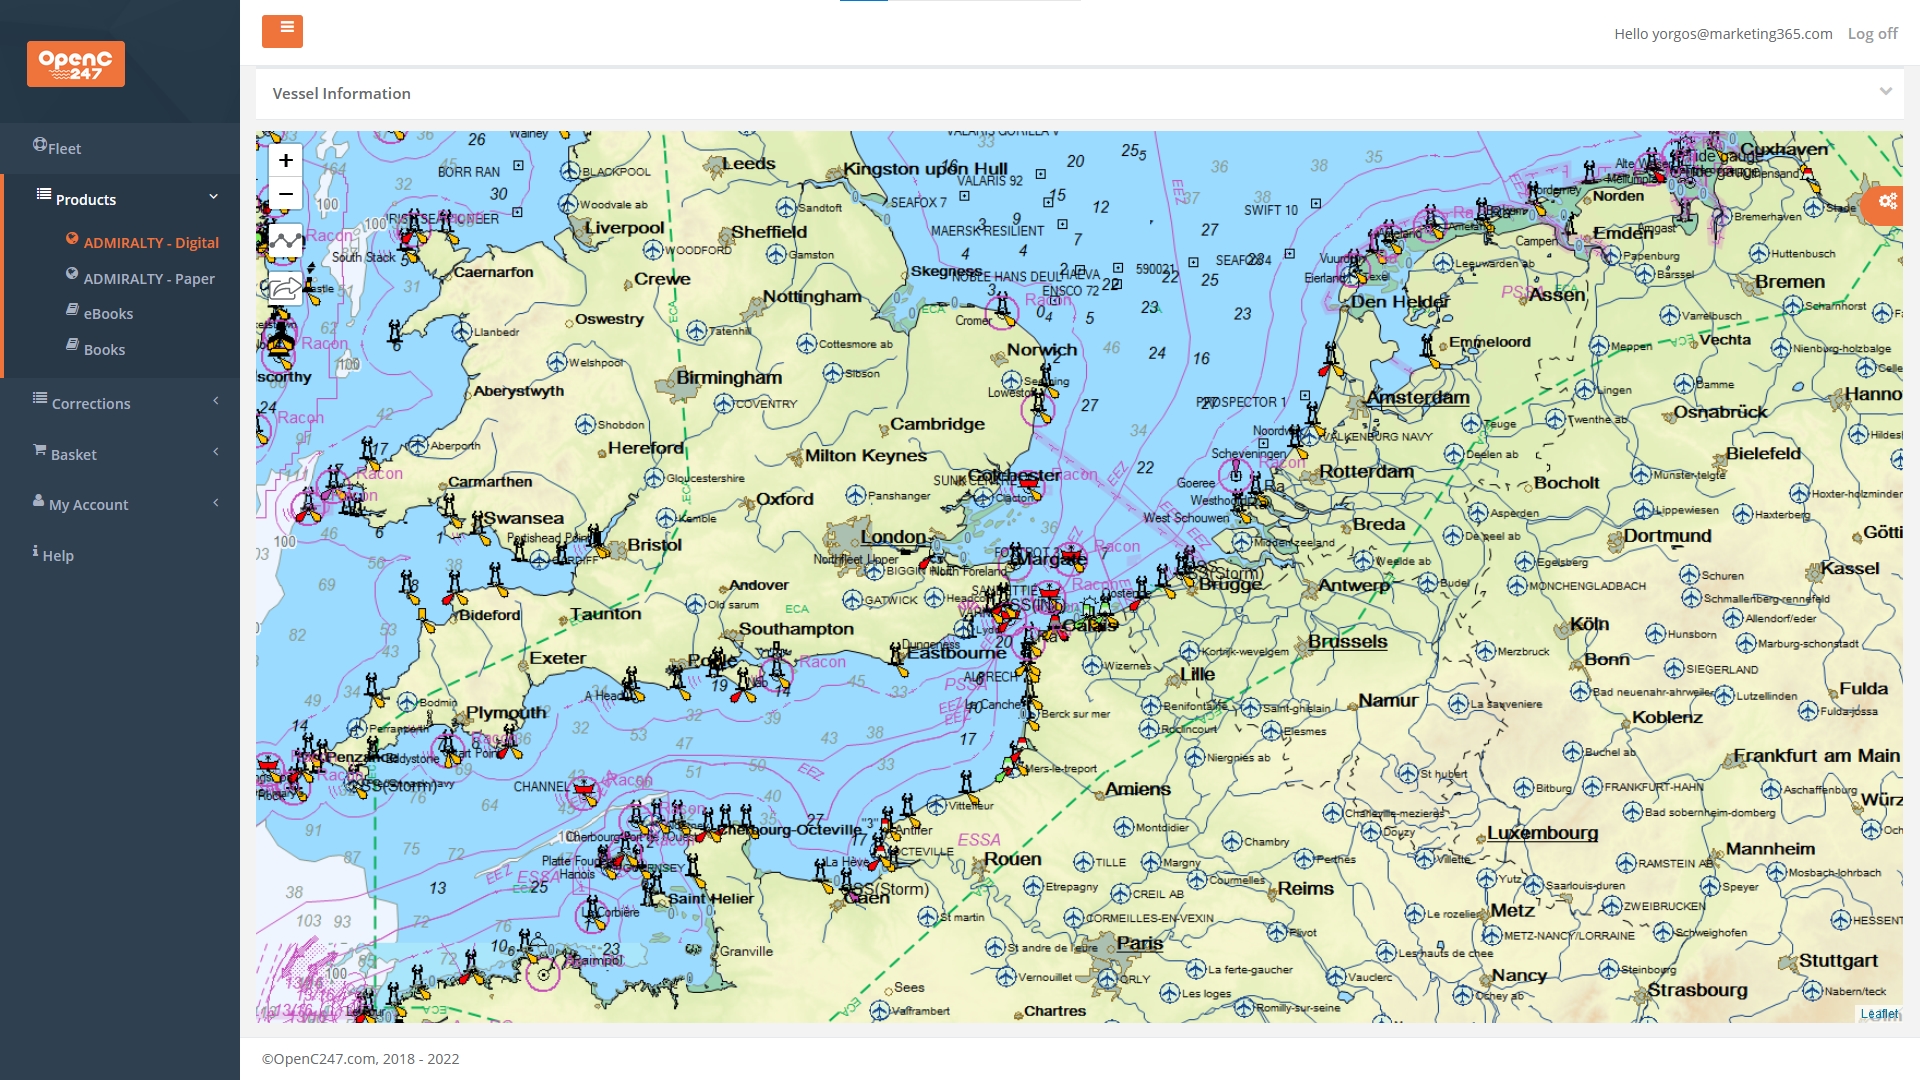 Billiga sjökort av OpenC247 - Gratis provperiod